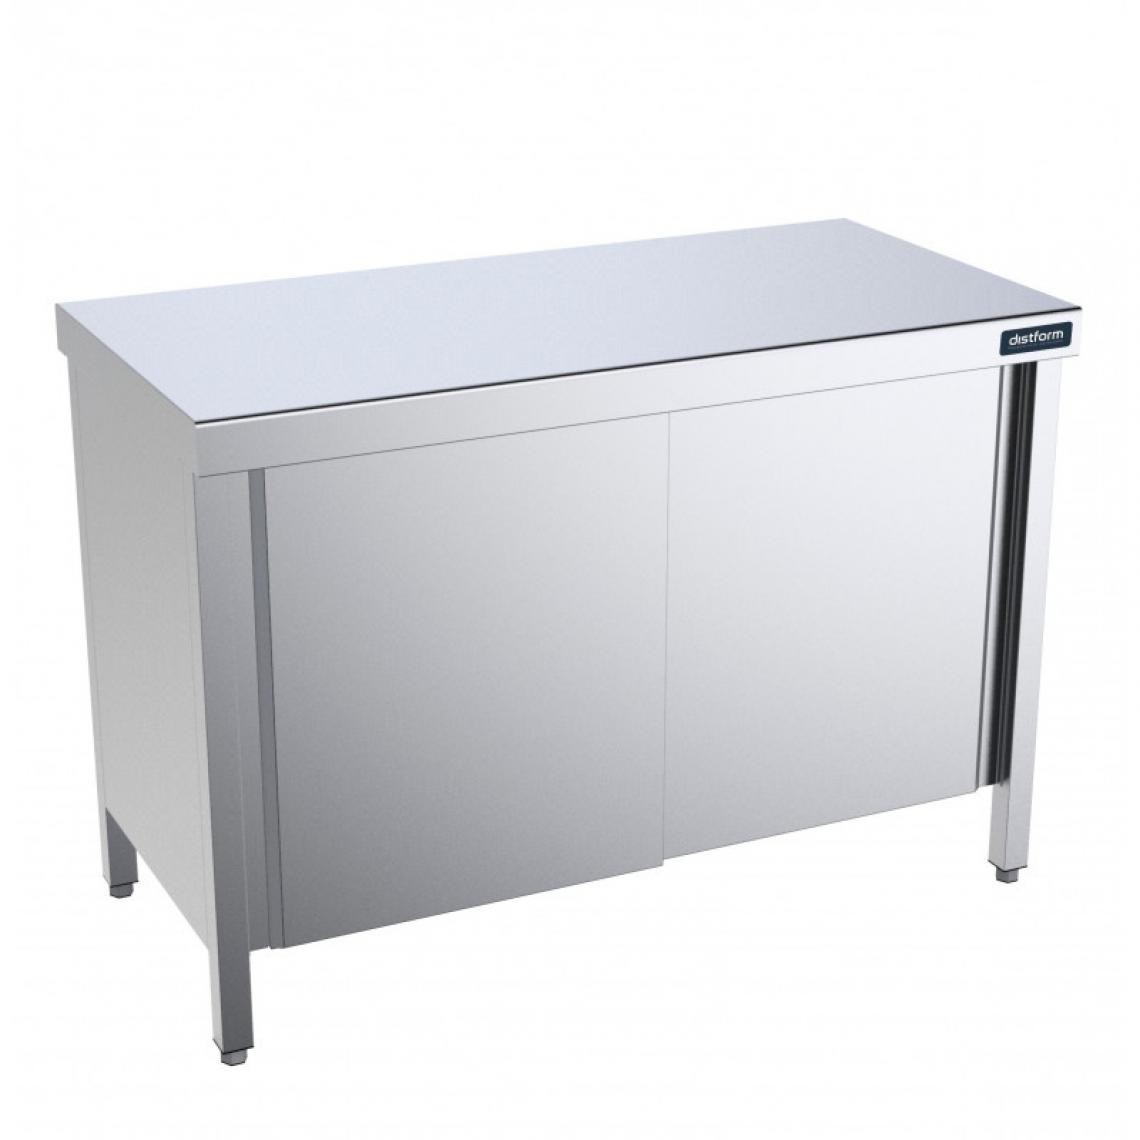 DISTFORM - Table Centrale avec Portes Battantes Profondeur 700mm - Distform - Acier inoxydable1600x700 - Tables à manger